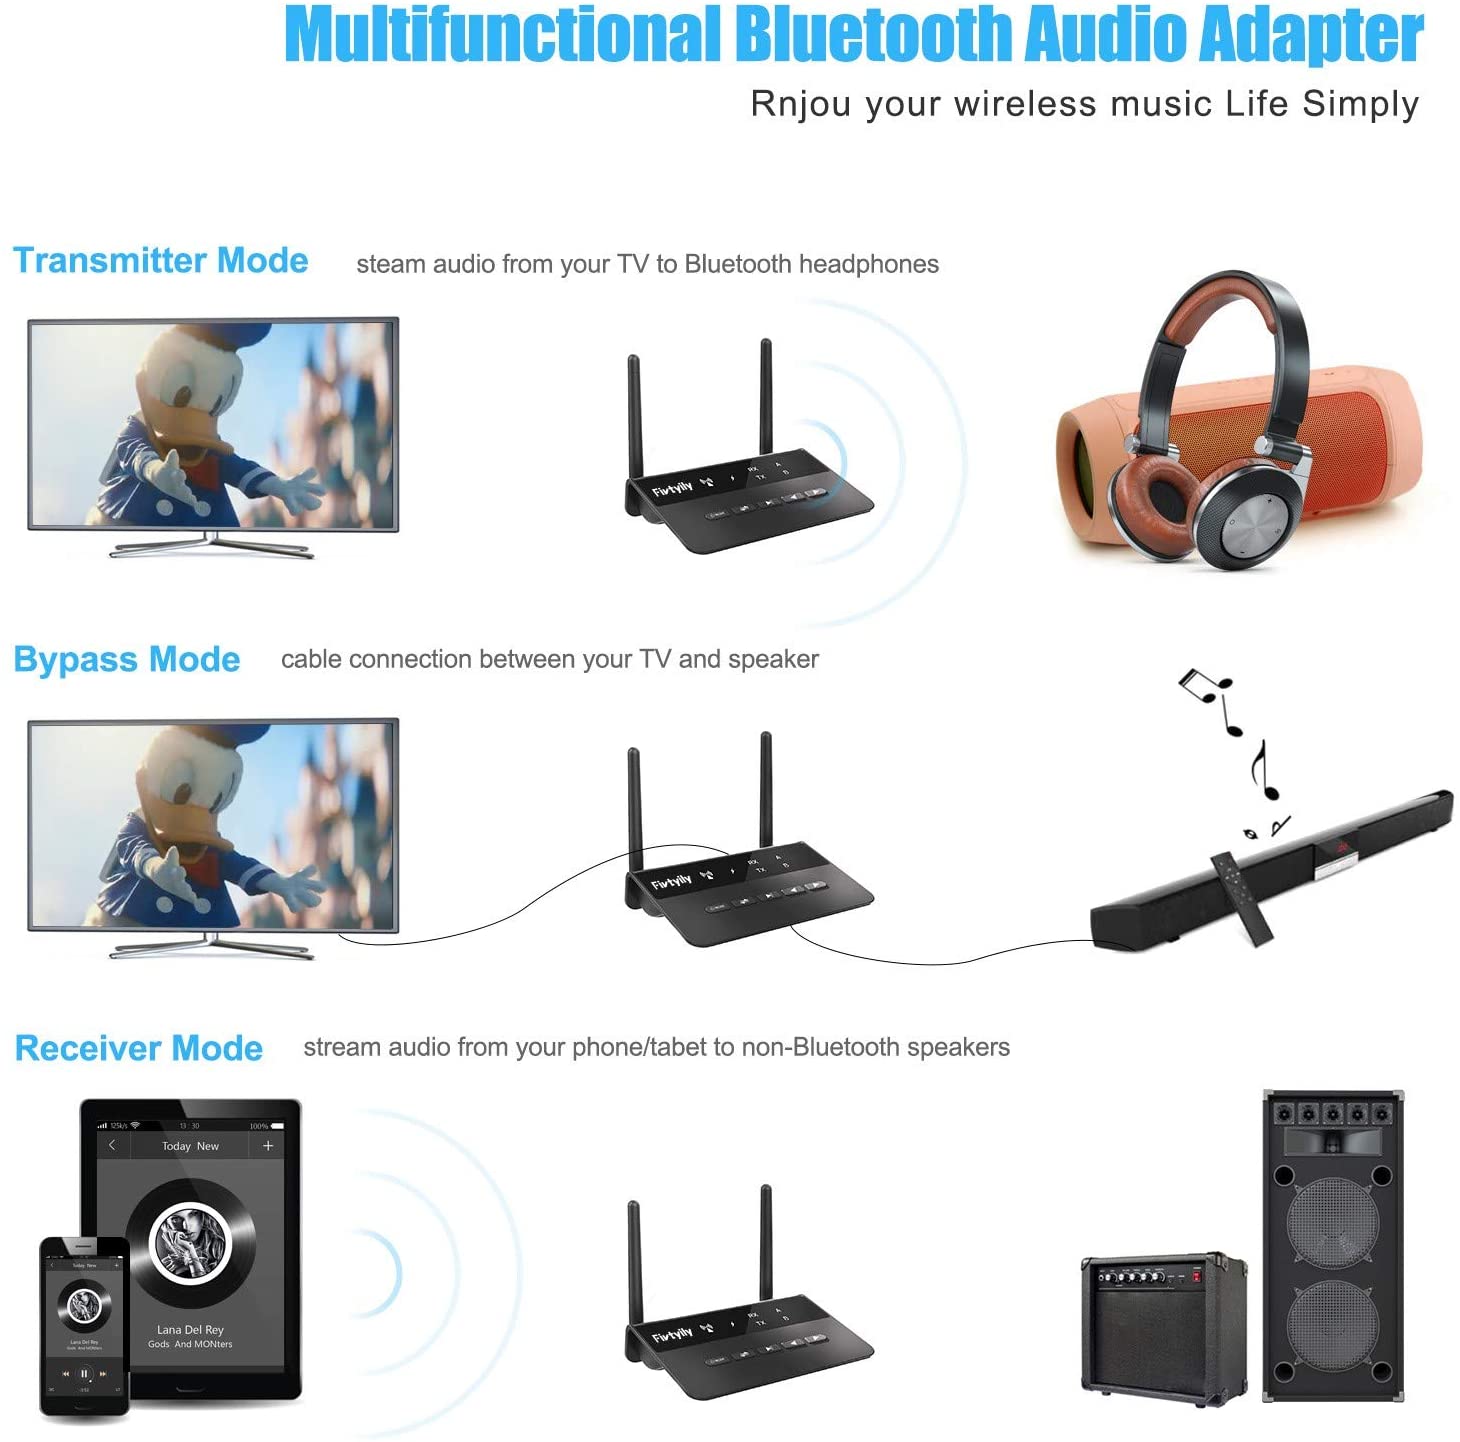 Receptor transmisor Bluetooth 5.0 de largo alcance para TV y PC Audio, altavoces estéreo para el hogar, adaptador inalámbrico de baja latencia aptX para auriculares, óptico digital 0.138 in AUX RCA